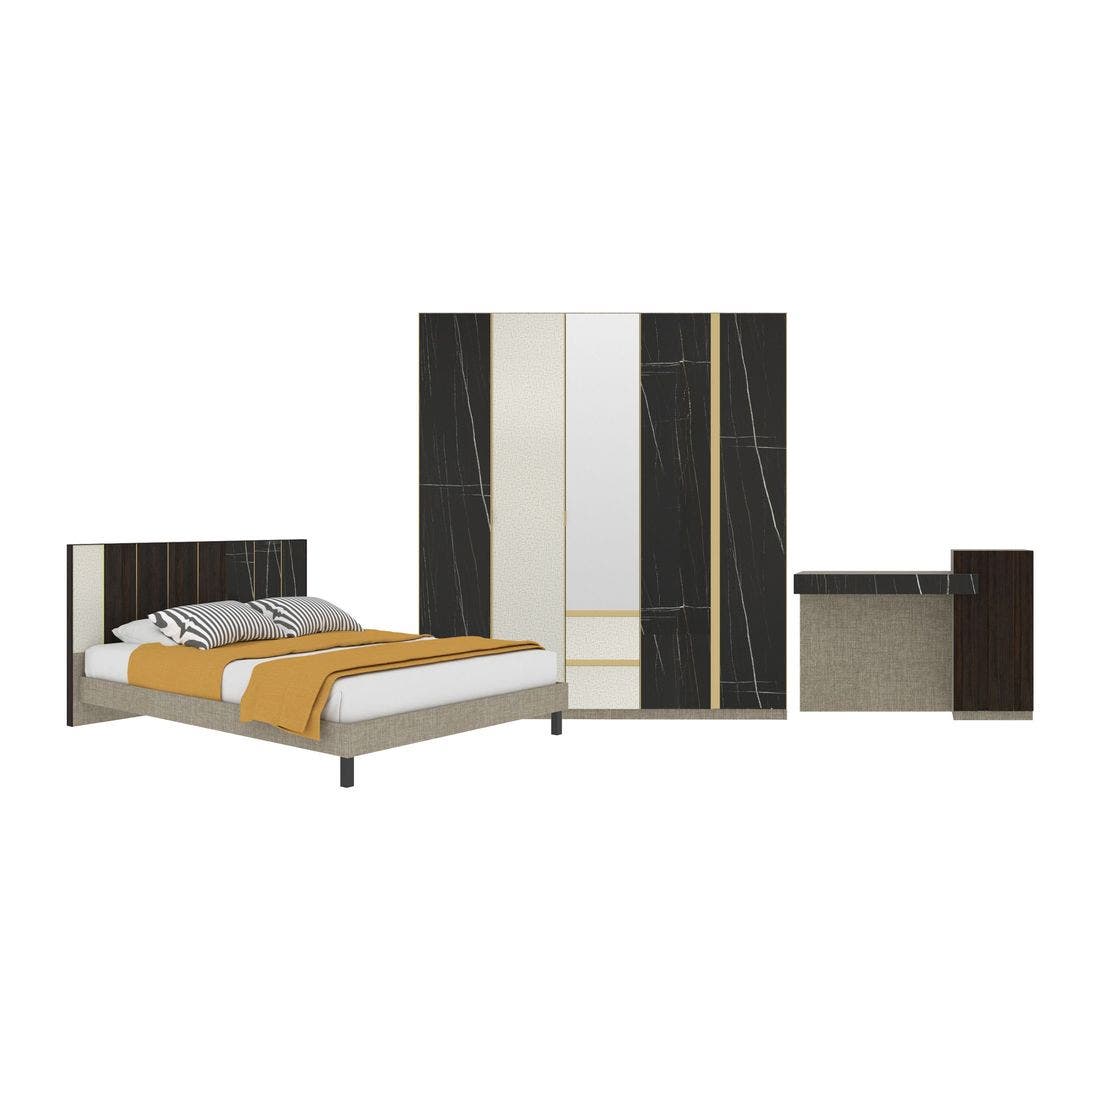 ชุดห้องนอน ชุดห้องนอนขนาด 5 ฟุต รุ่น Aureus สีสีดำ-SB Design Square